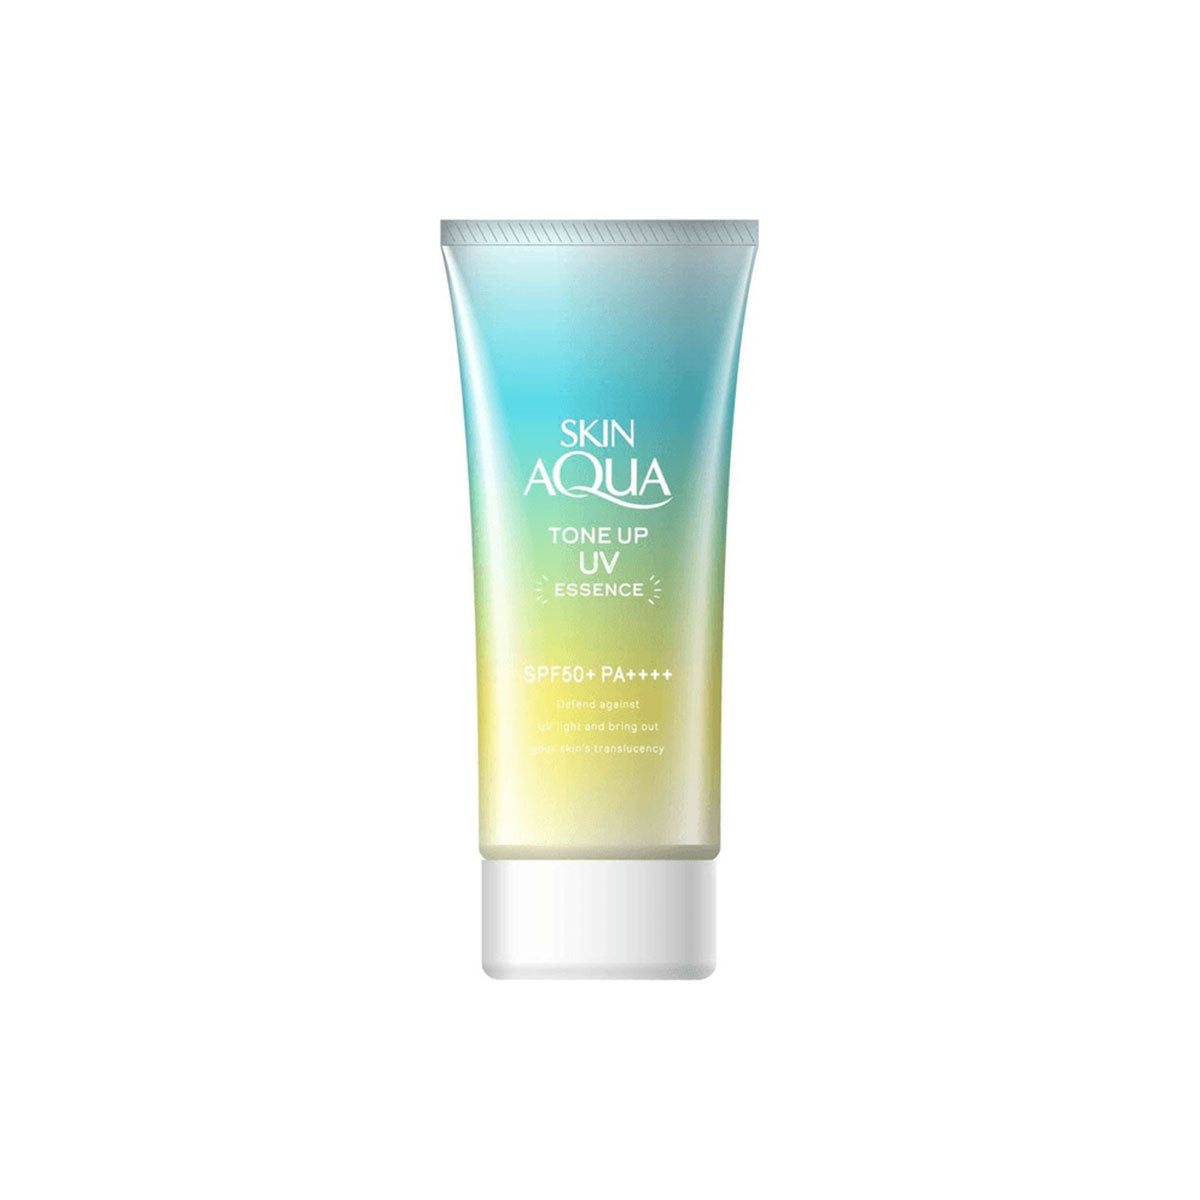 Skin Aqua Tone Up UV Essence Mint Green SPF50 + / PA ++++ 80g